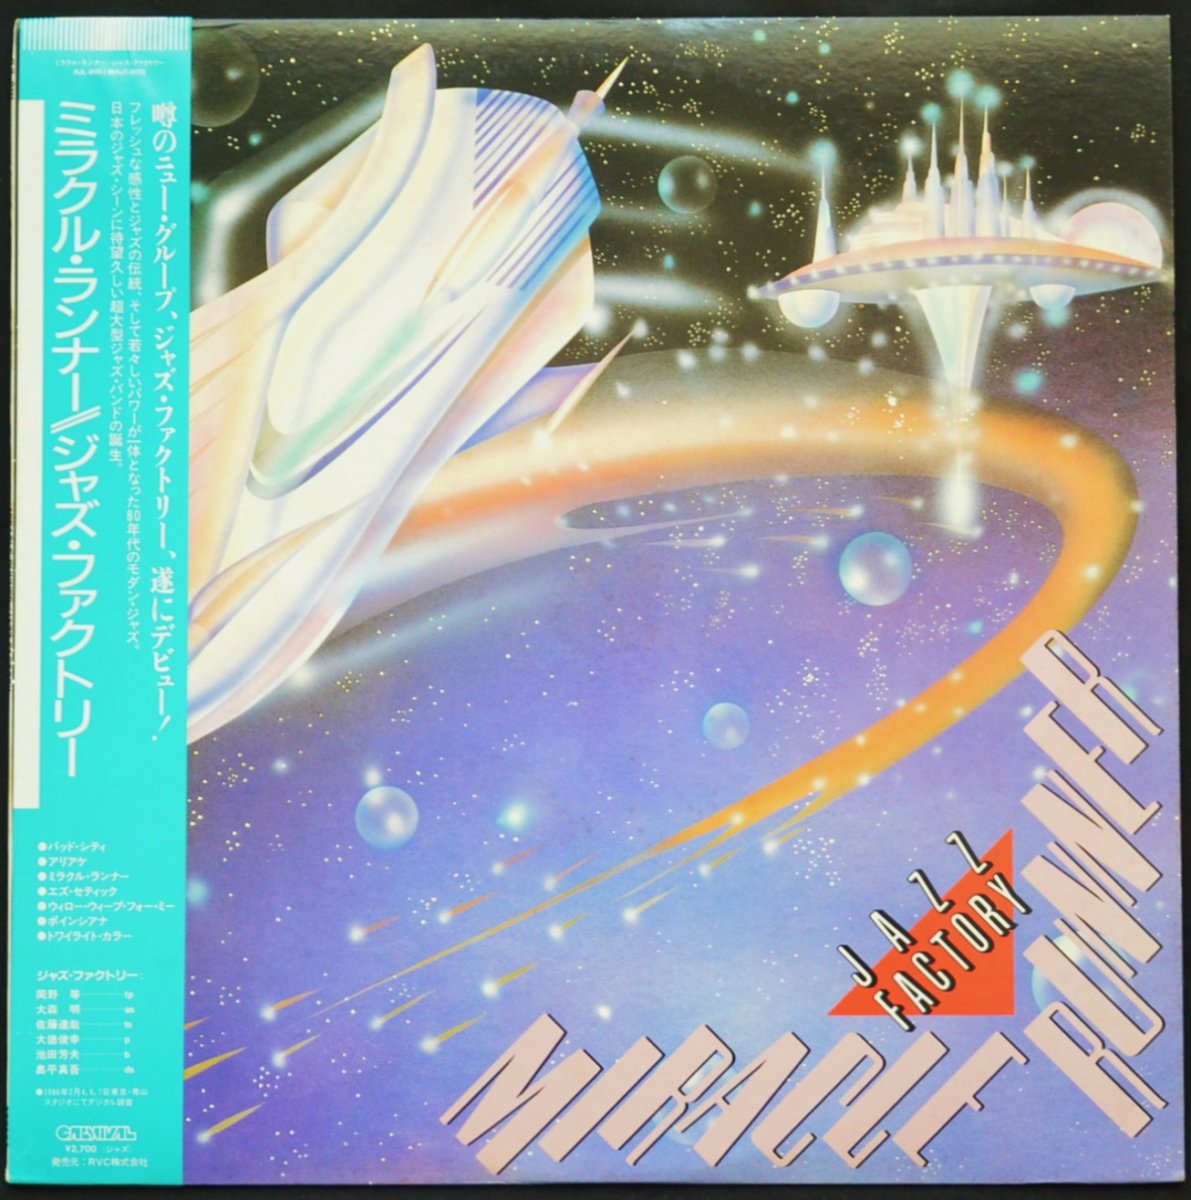 ジャズ・ファクトリー JAZZ FACTORY / ミラクル・ランナー  MIRACLE RUNNER (LP)